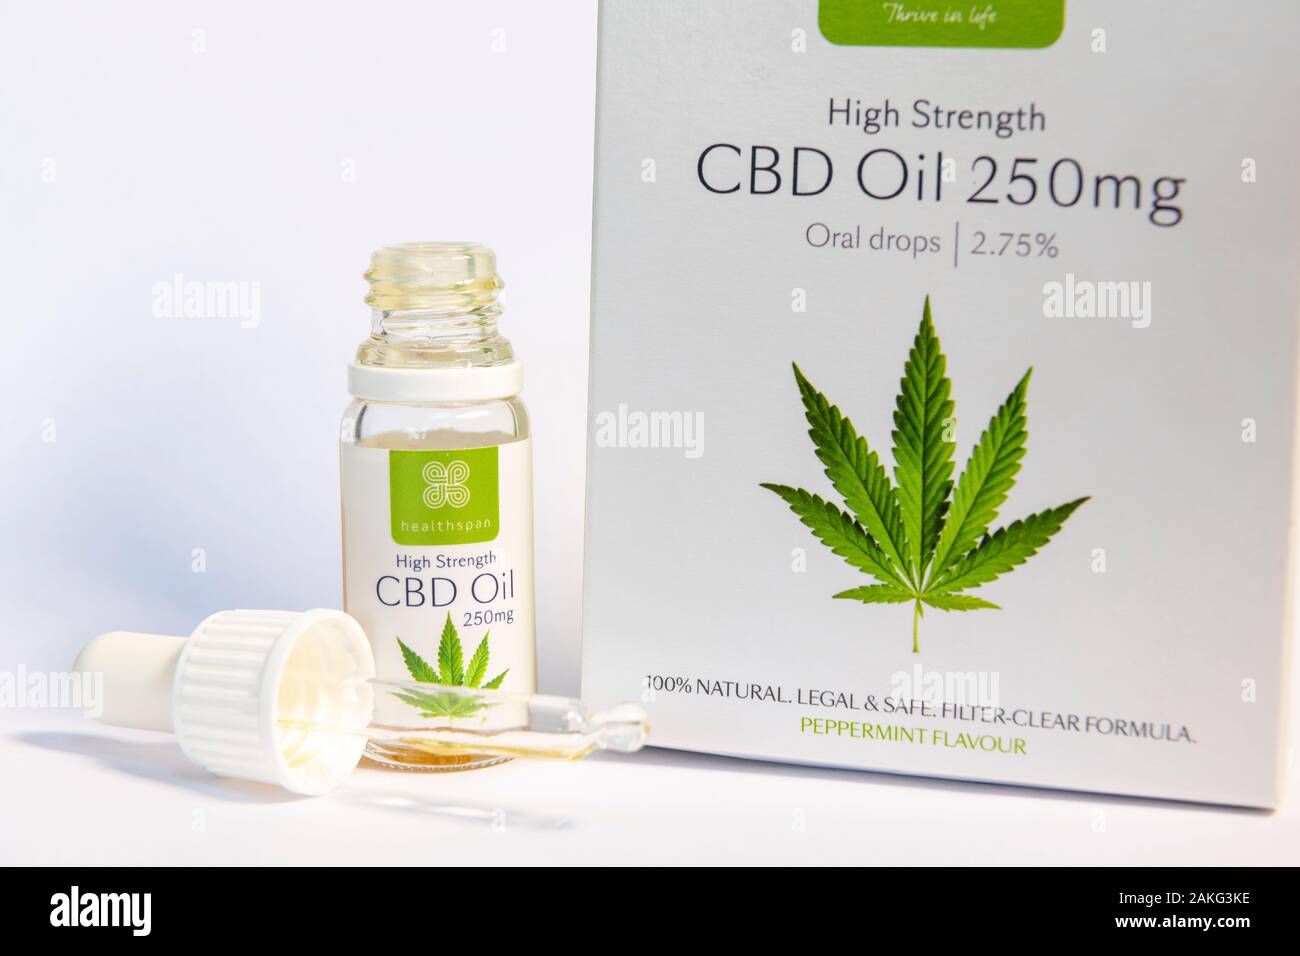 Una scatola di marca Healthspan olio CBD, legale olio di cannabis usata come un supplemento di salute con il contagocce. Foto Stock